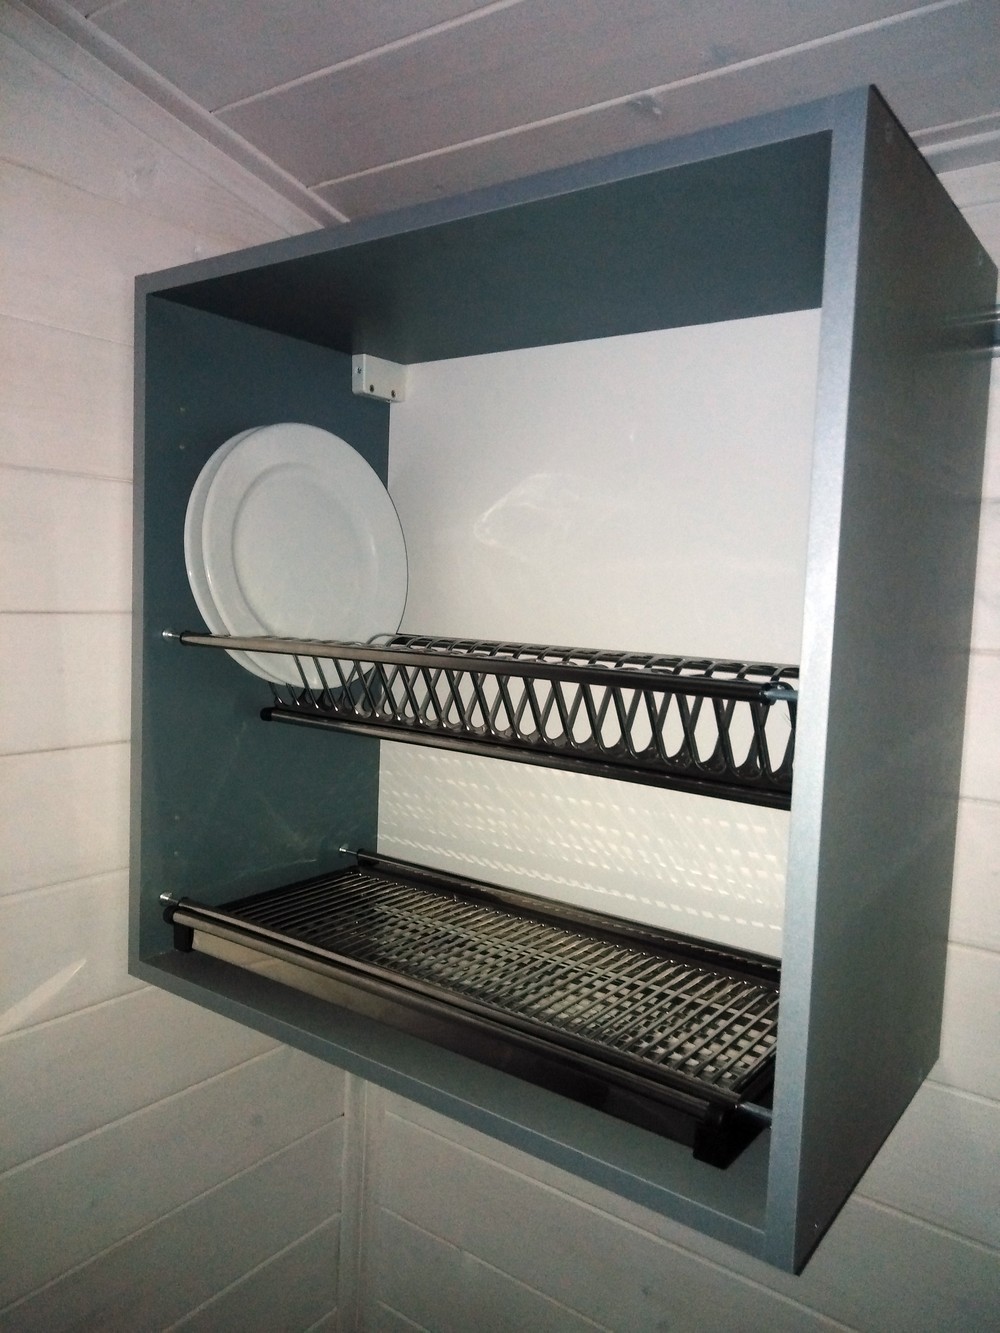 Шкаф с сушилкой для посуды внутри шириной и высотой по 600 мм, глубиной 320 мм